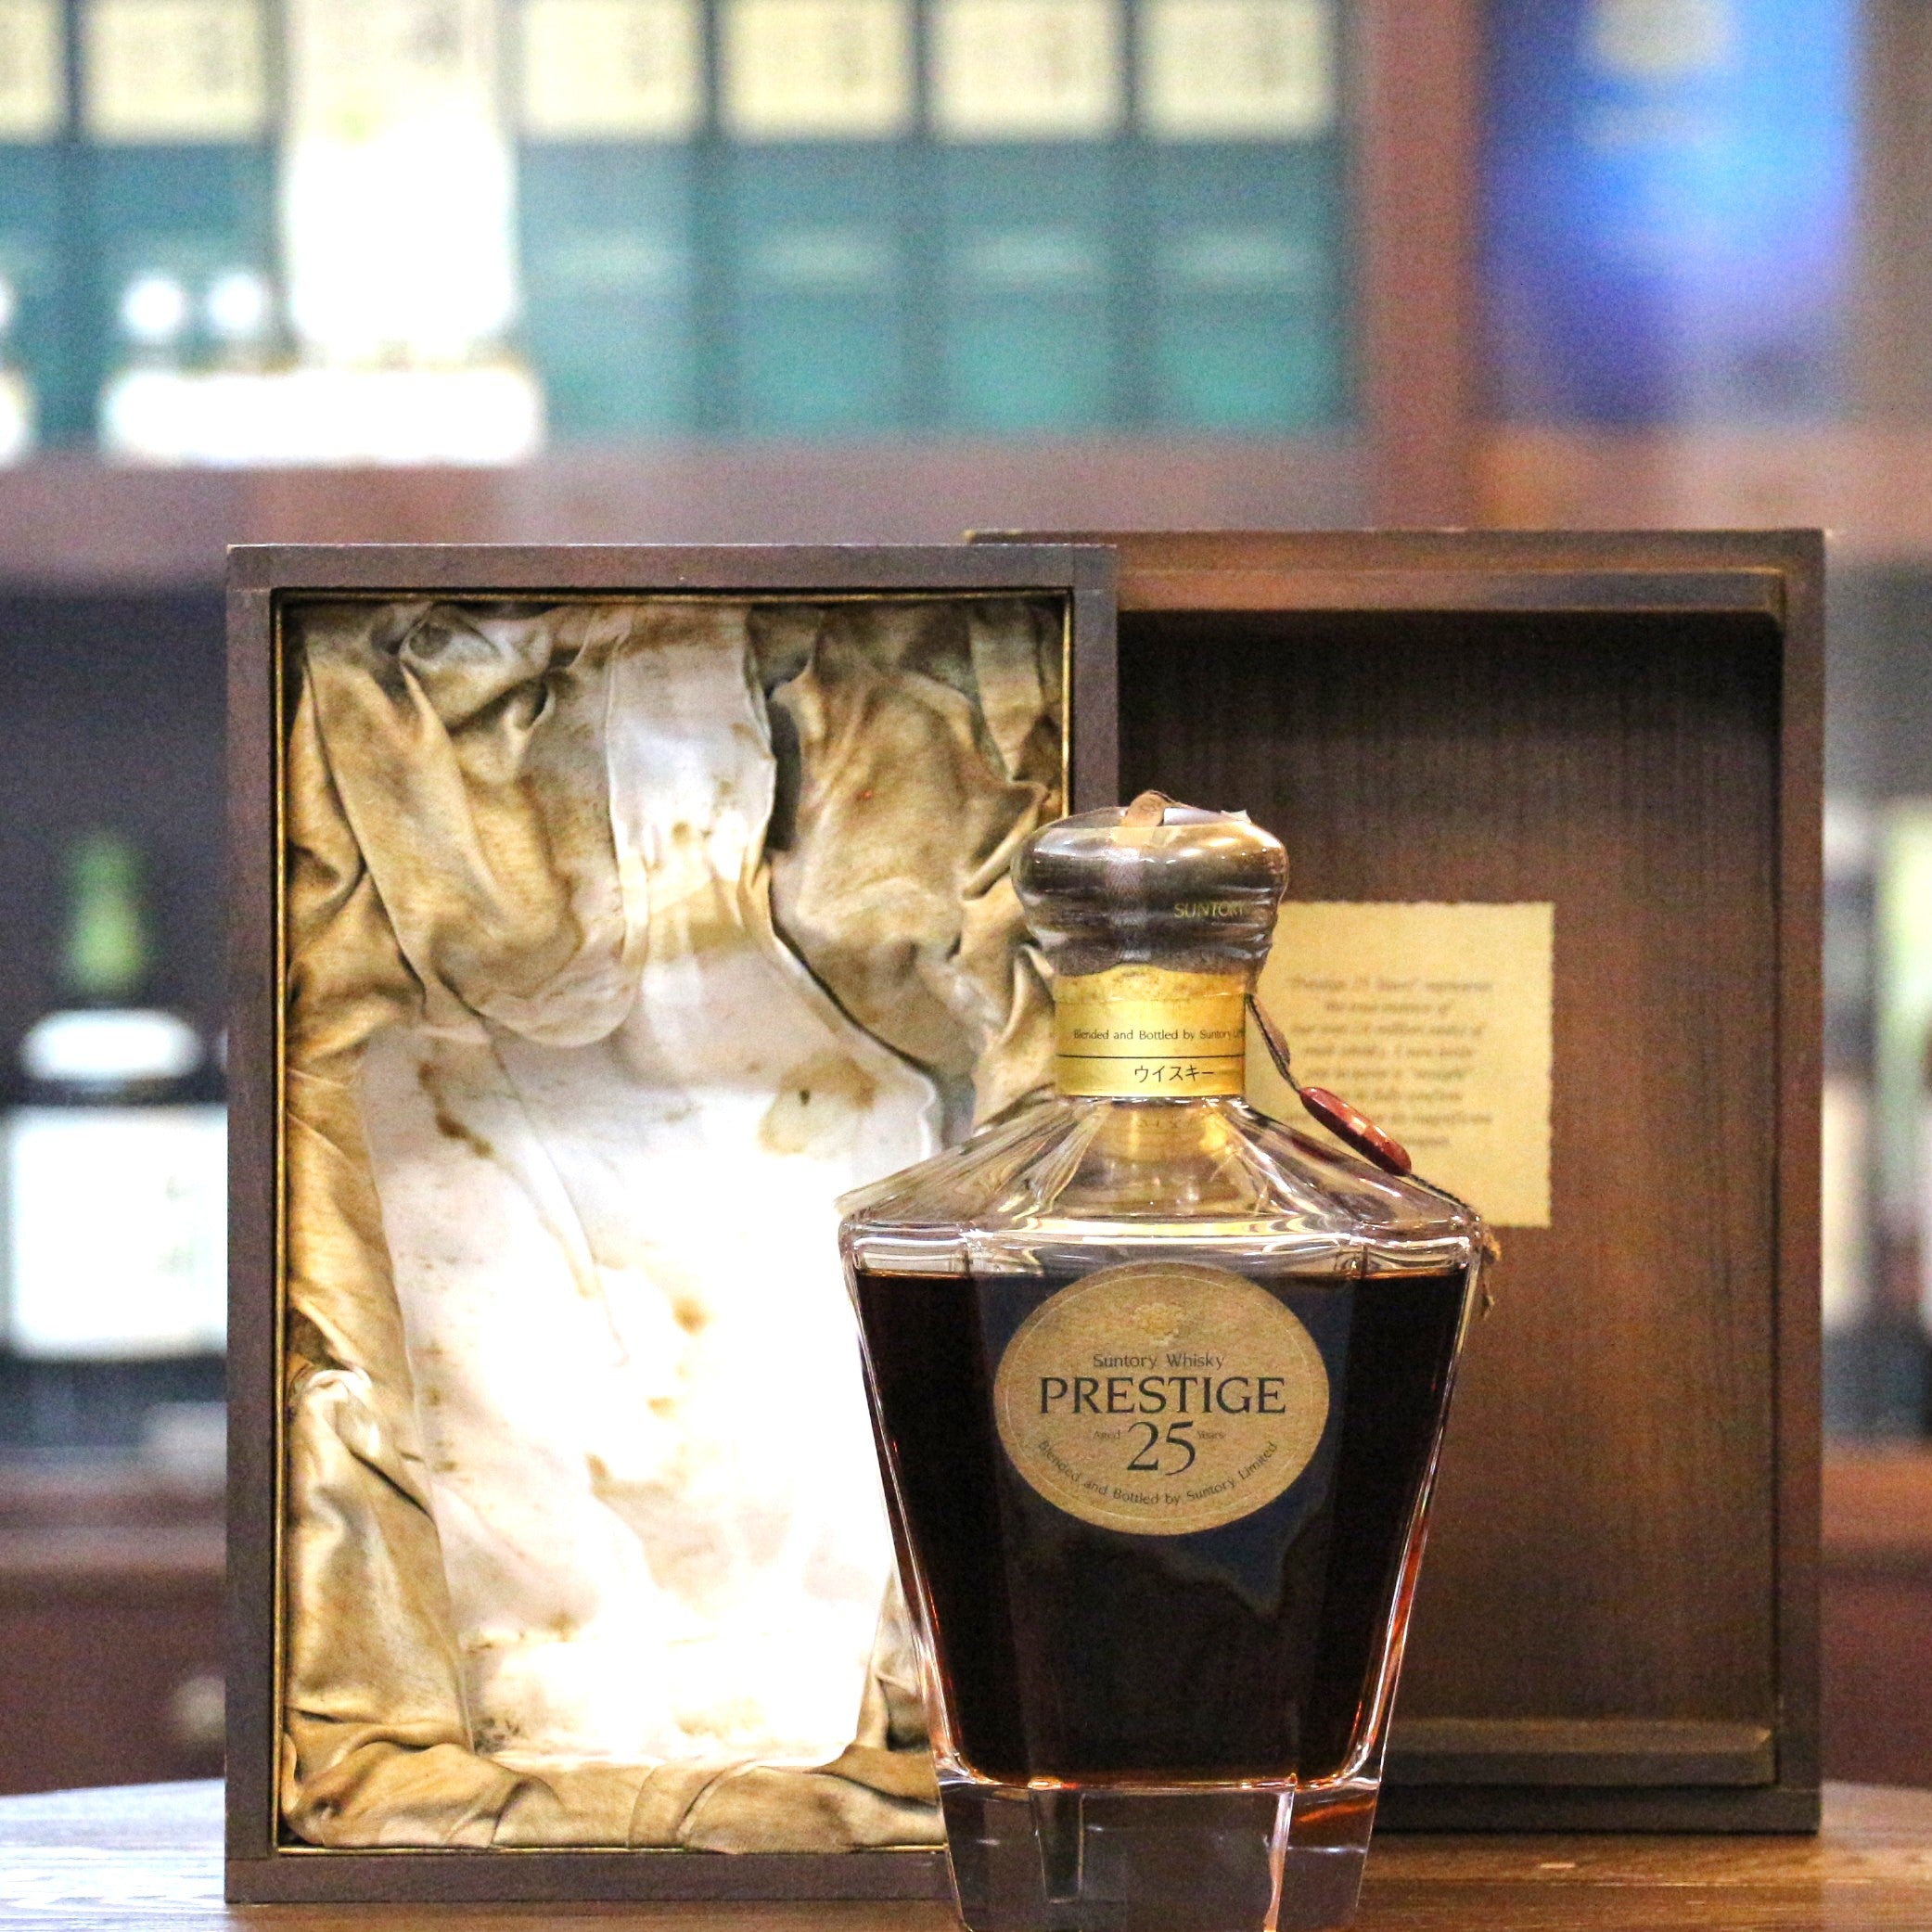 Suntory Prestige 25 Years Old Blended Japanese Whisky